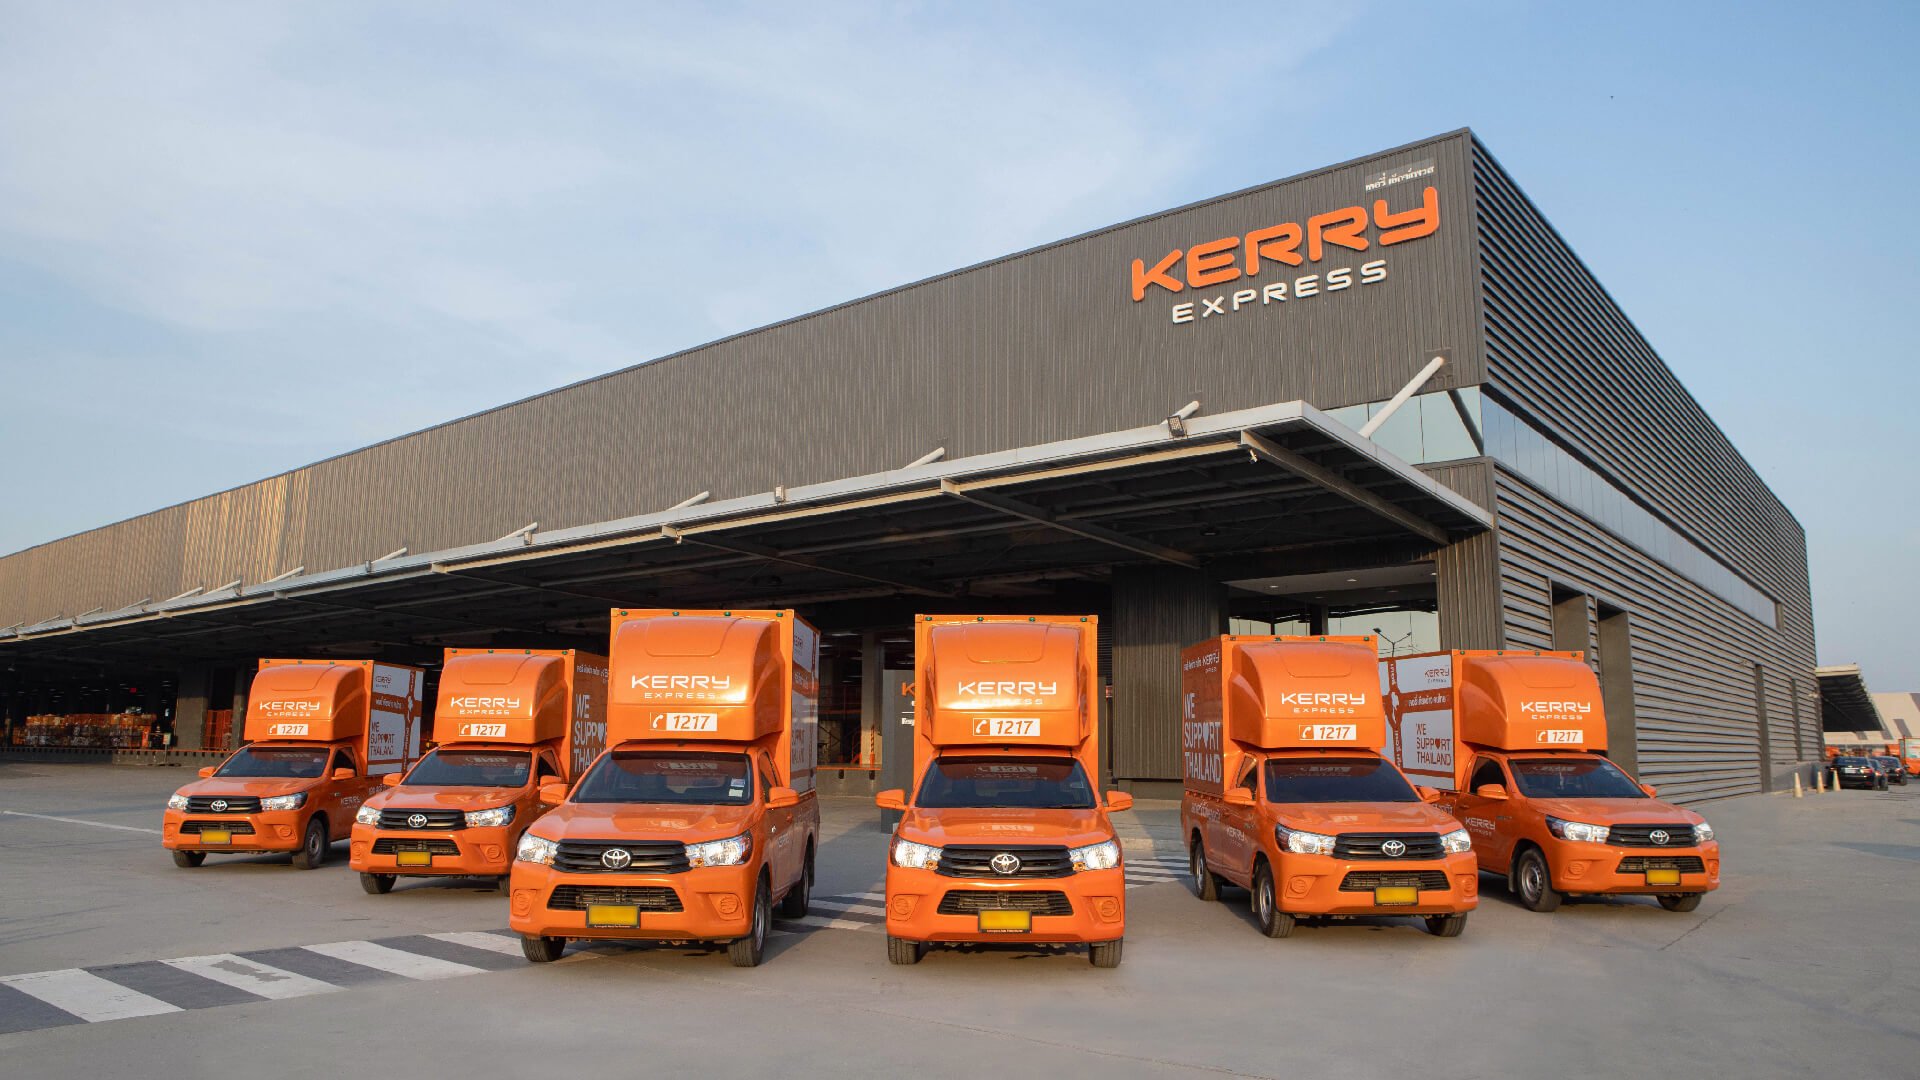 Kerry Express ชวนร่วมเป็นเจ้าของธุรกิจง่ายๆ ลงทุนน้อย กำไรดีงาม !